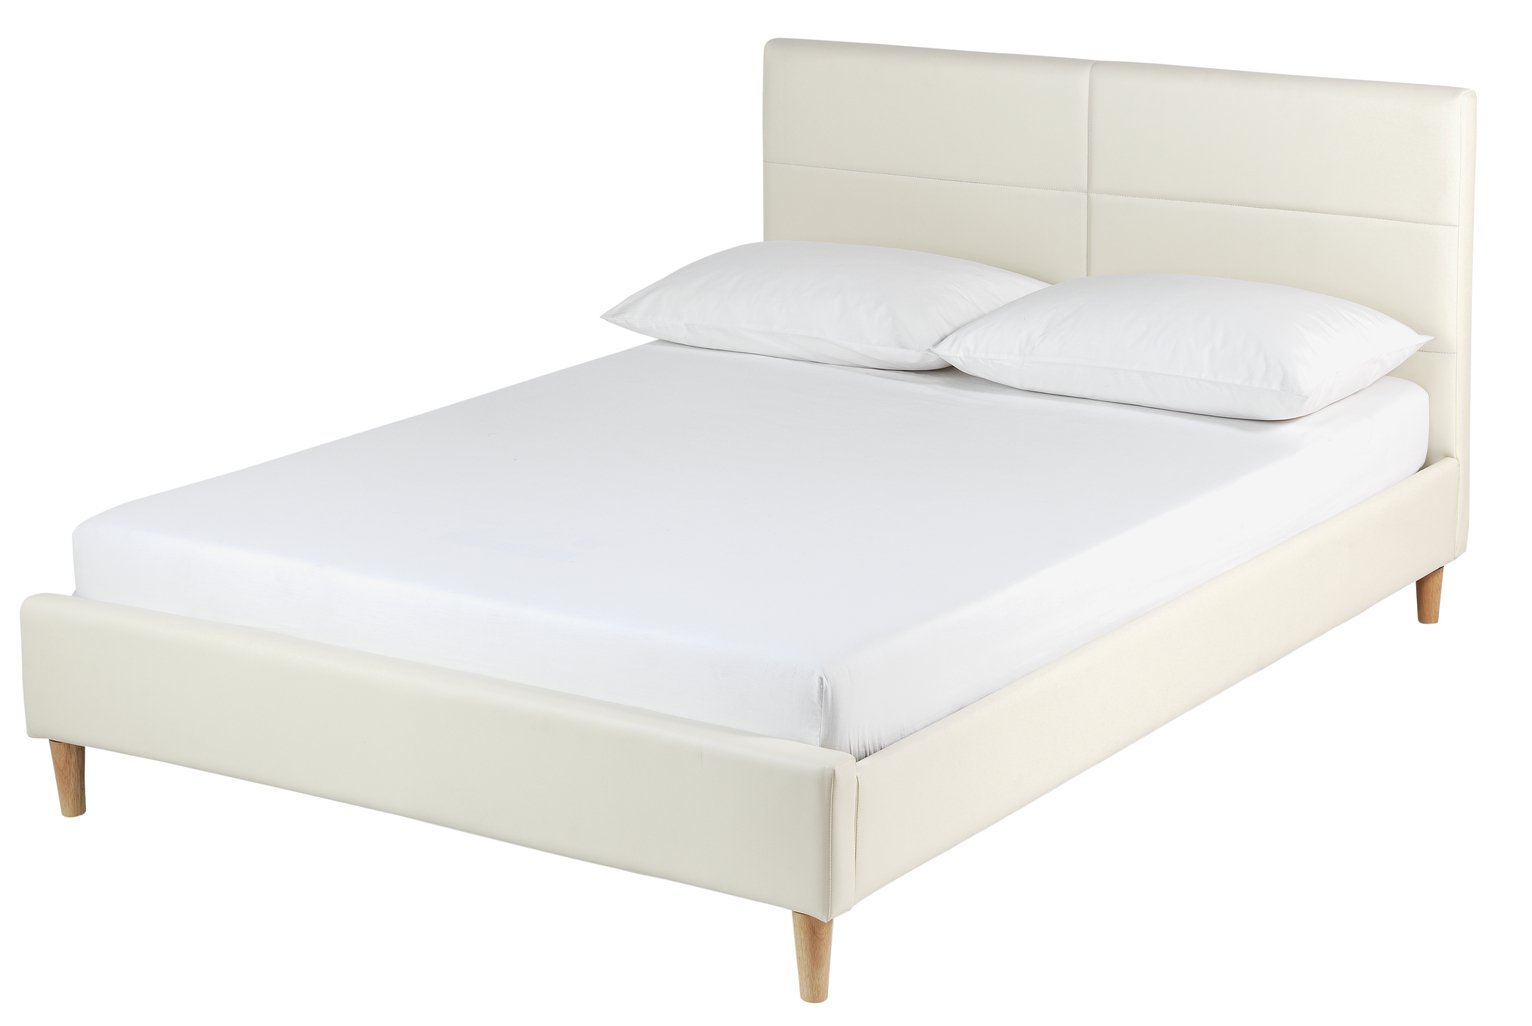 Argos Home Mendelssohn Kingsize Bed Frame - White